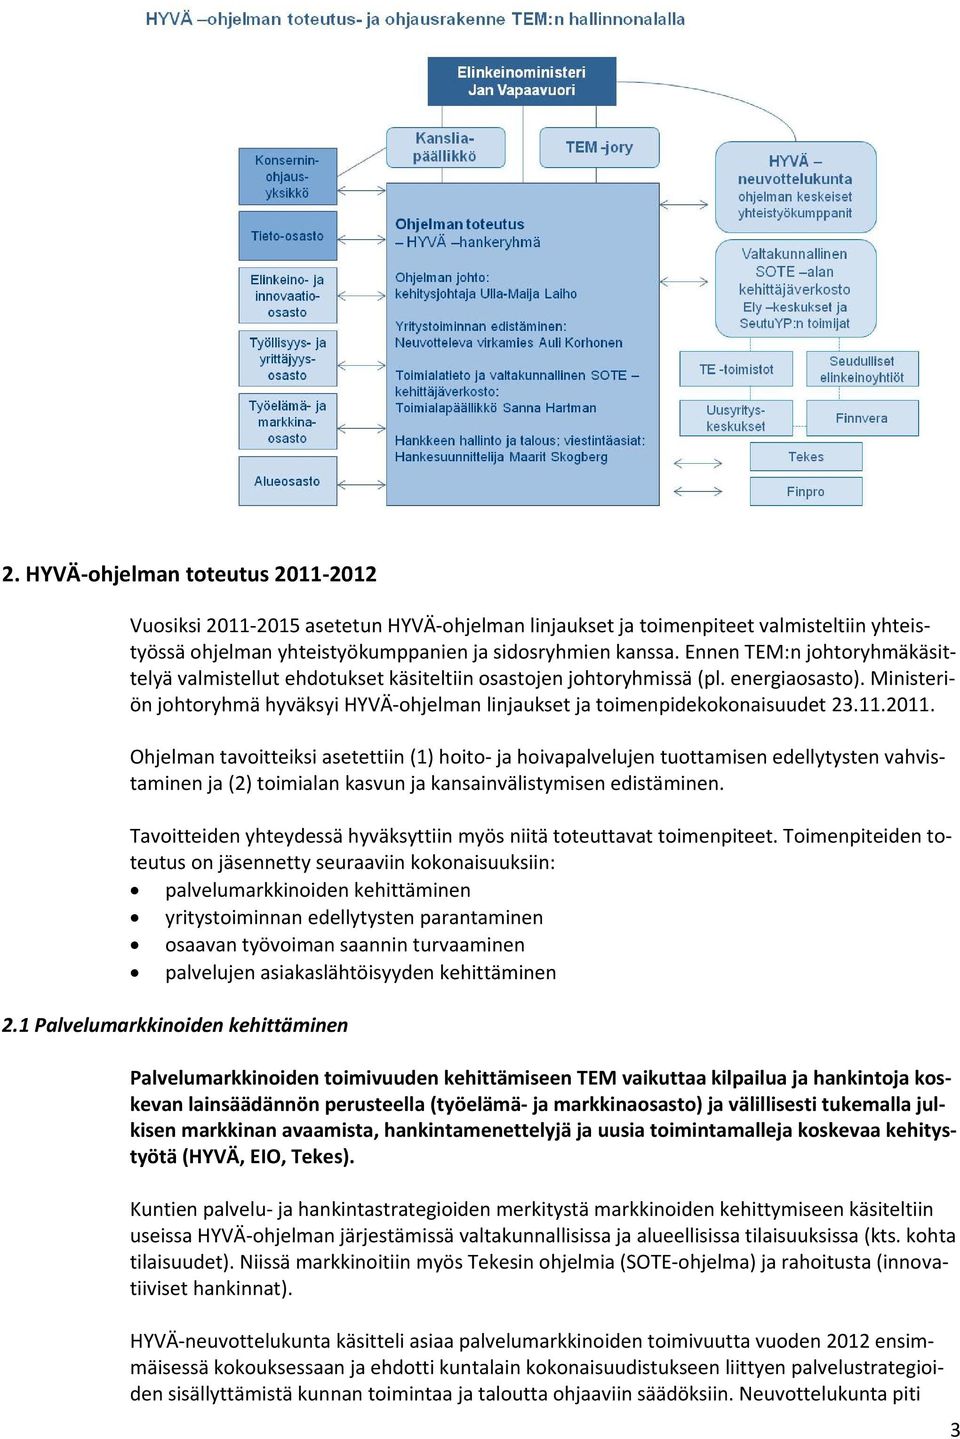 Ministeriön johtoryhmä hyväksyi HYVÄ ohjelman linjaukset ja toimenpidekokonaisuudet 23.11.2011.